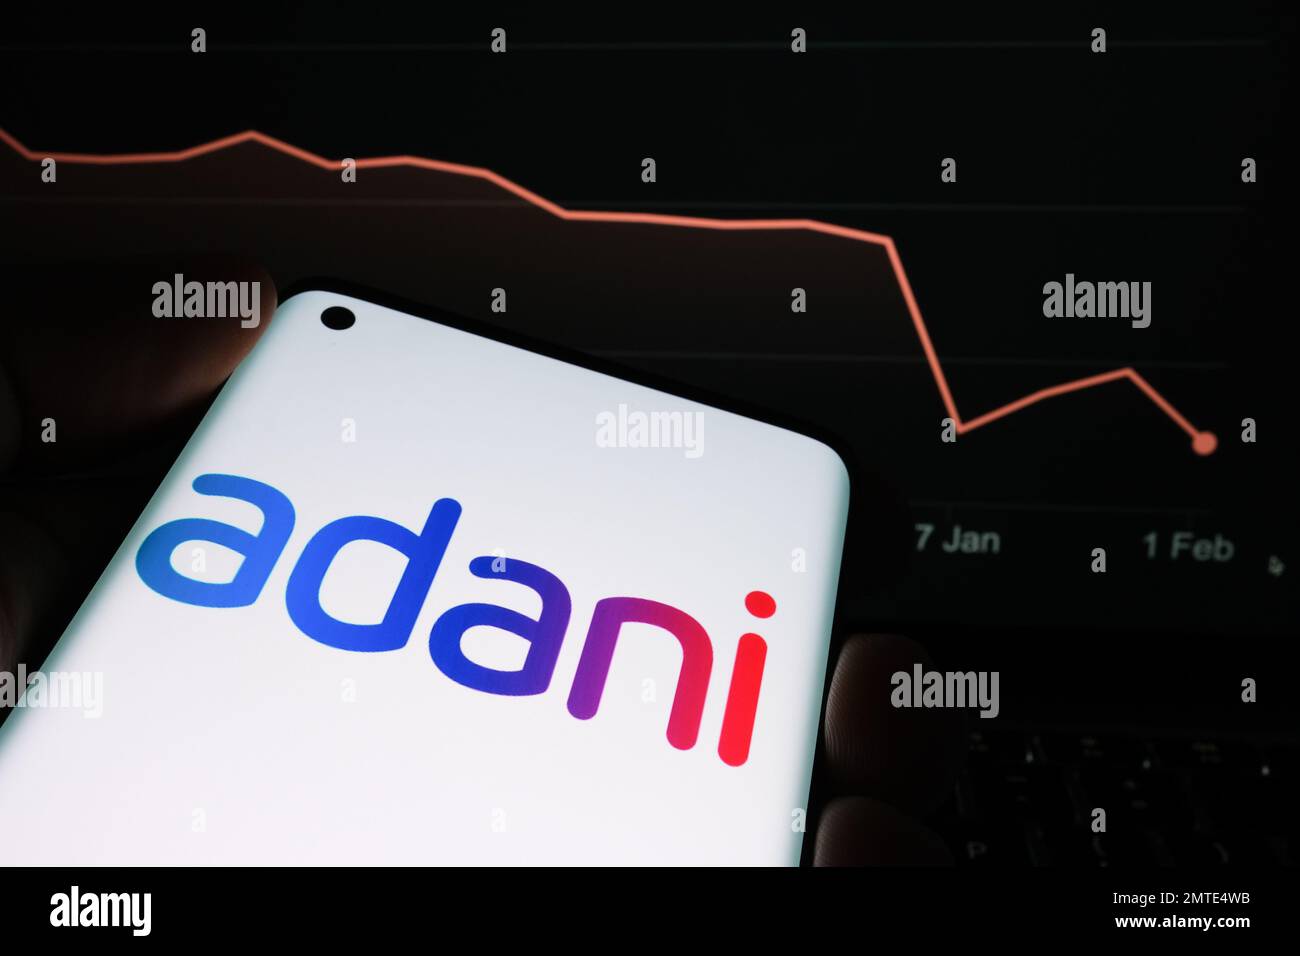 Le logo du groupe Adani est visible sur l'écran du smartphone et le graphique de baisse du prix des actions de la société est visible sur fond flou. Graphique des actions réelles pour un mois Banque D'Images